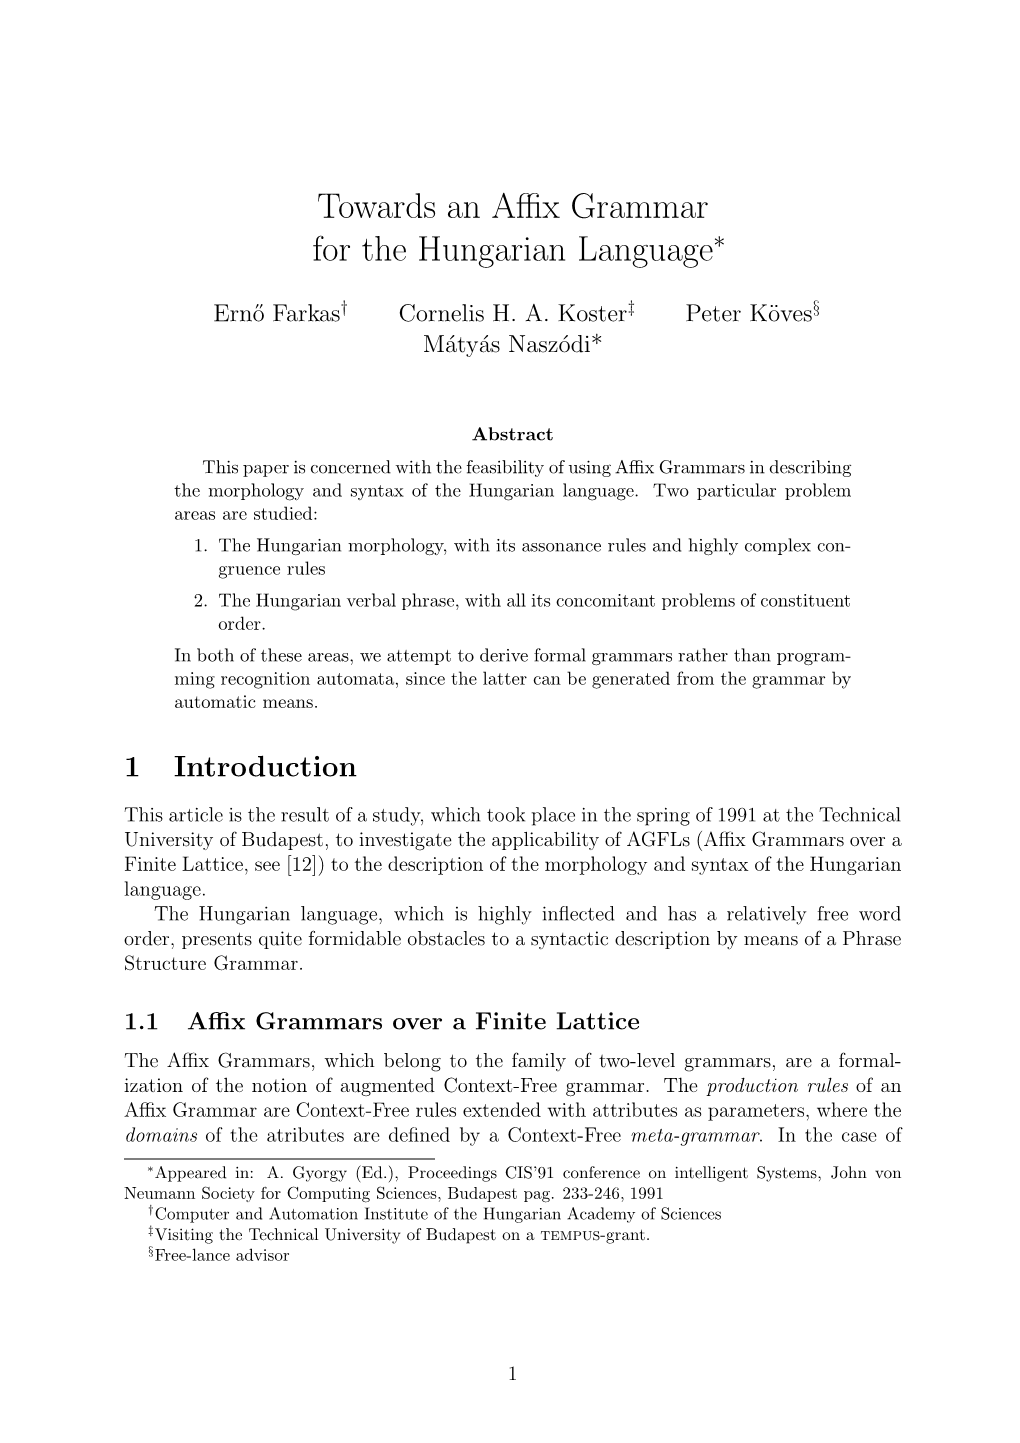 Towards an Affix Grammar for the Hungarian Language